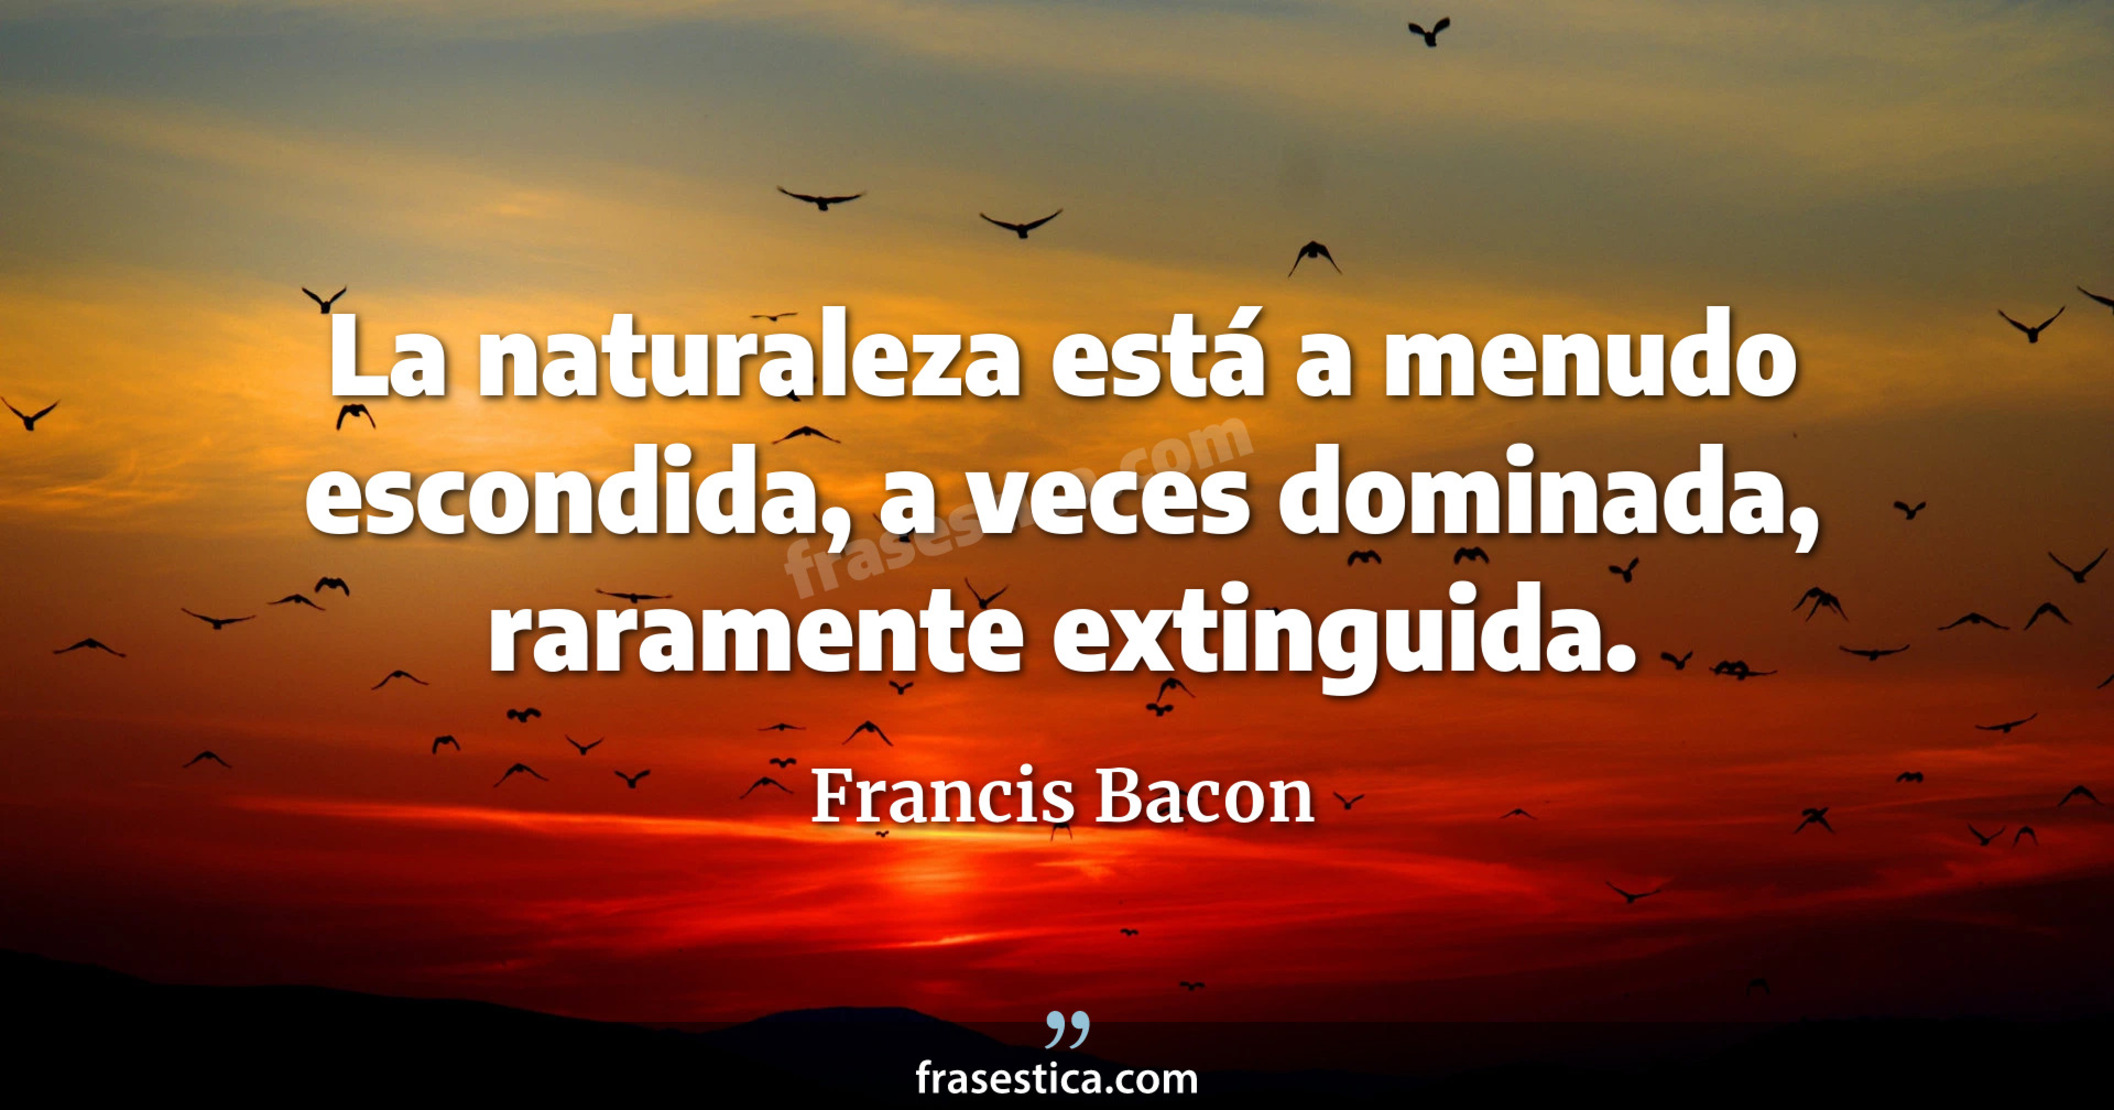 La naturaleza está a menudo escondida, a veces dominada, raramente extinguida. - Francis Bacon